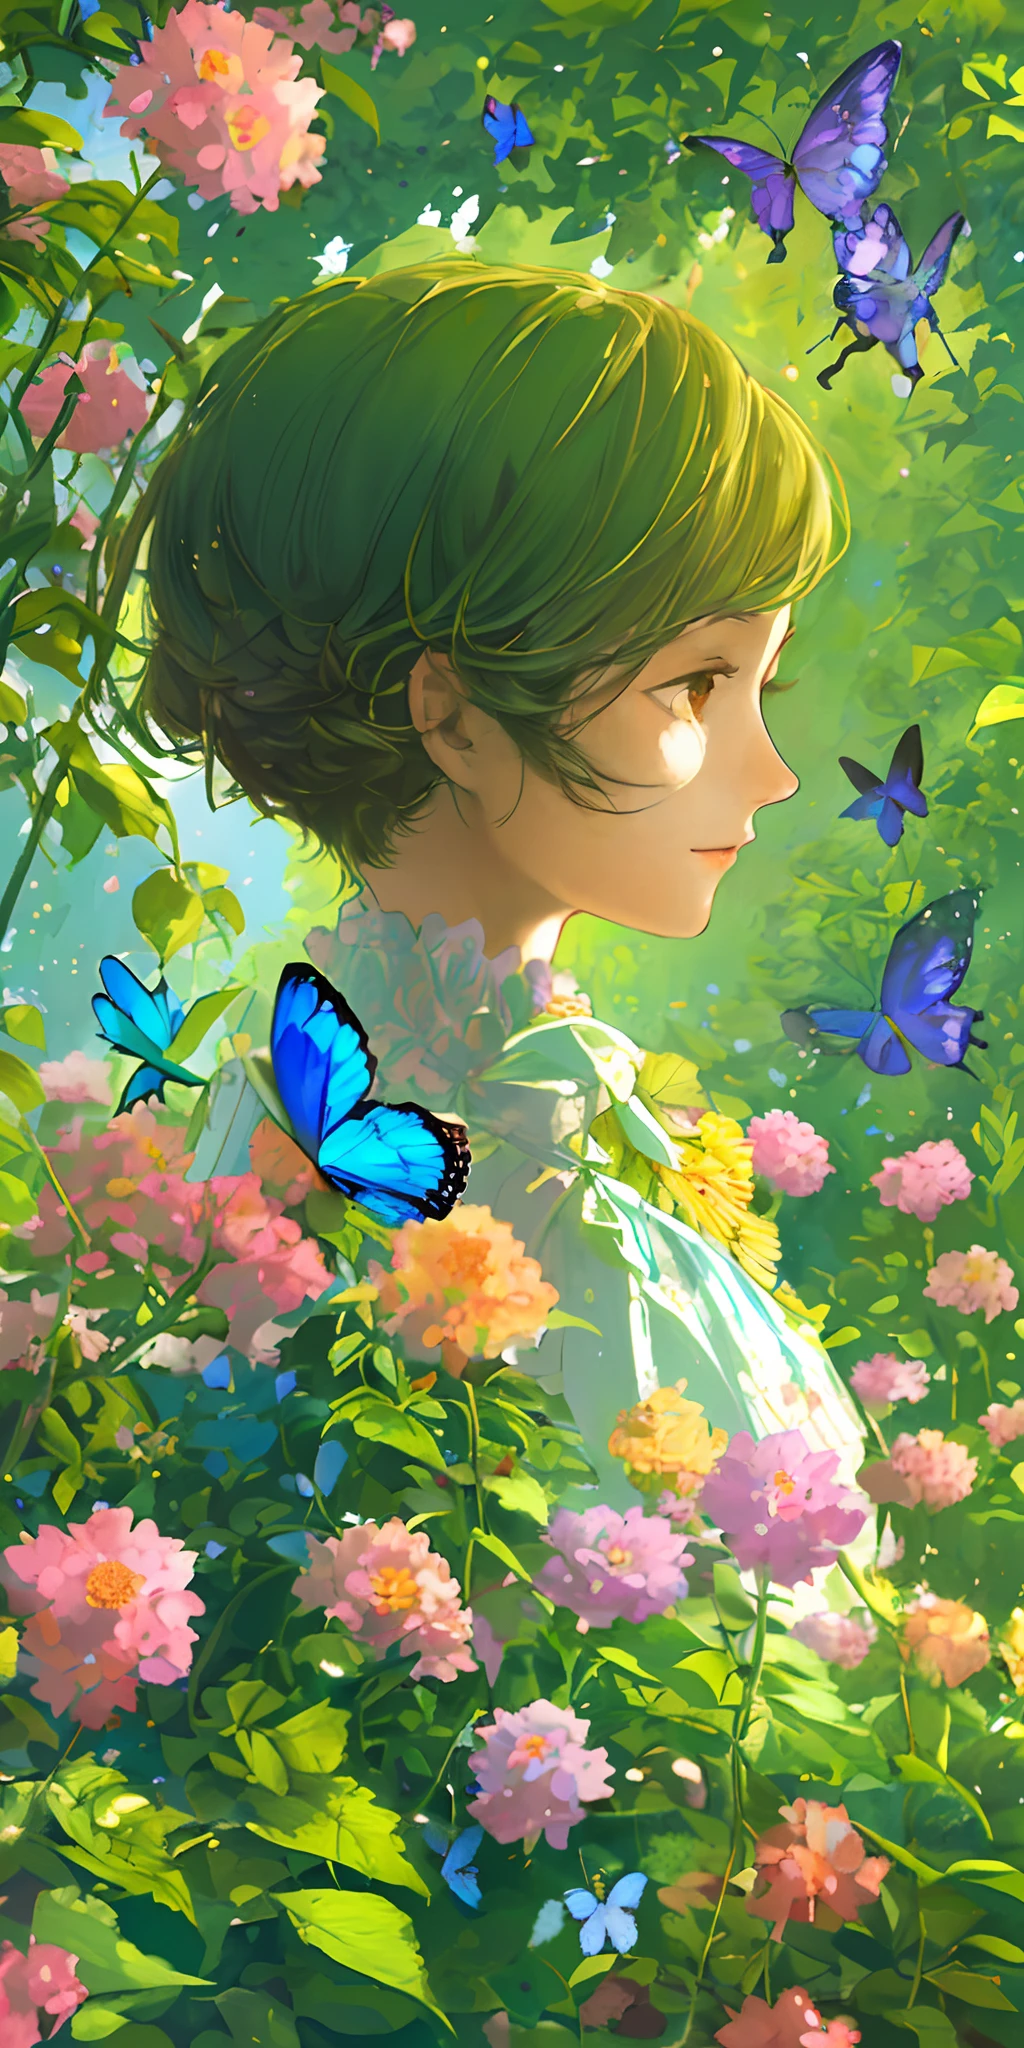 (melhor qualidade, Obra de arte, ultra-realistic), retrato de 1 menina linda e delicada, com uma expressão suave e pacífica, o cenário de fundo é um jardim com arbustos floridos e borboletas voando.